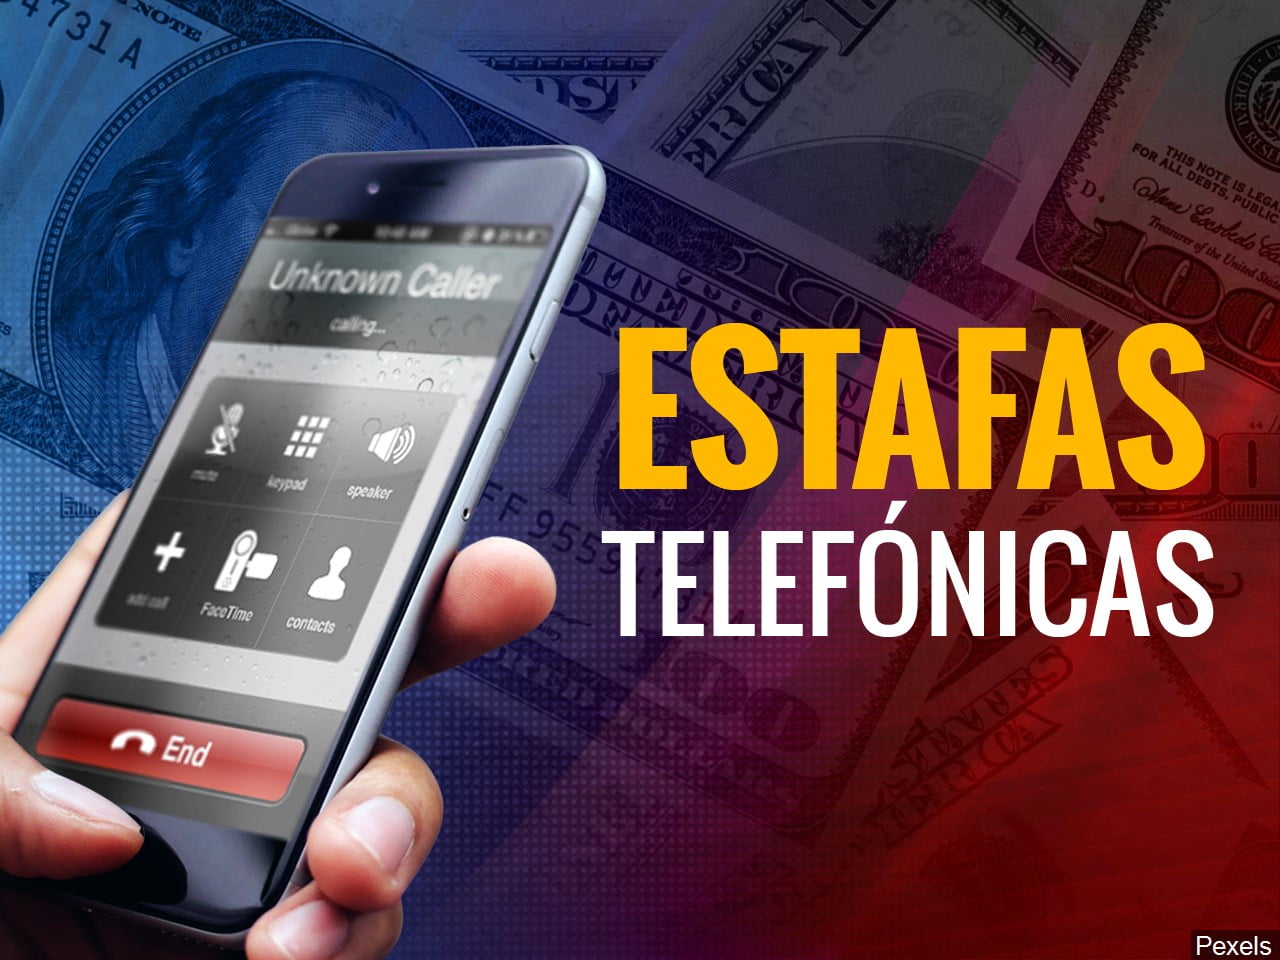 Alerta por Estafas: Anses comunica que NO manda empleados a domicilios, ni se contacta telefónicamente